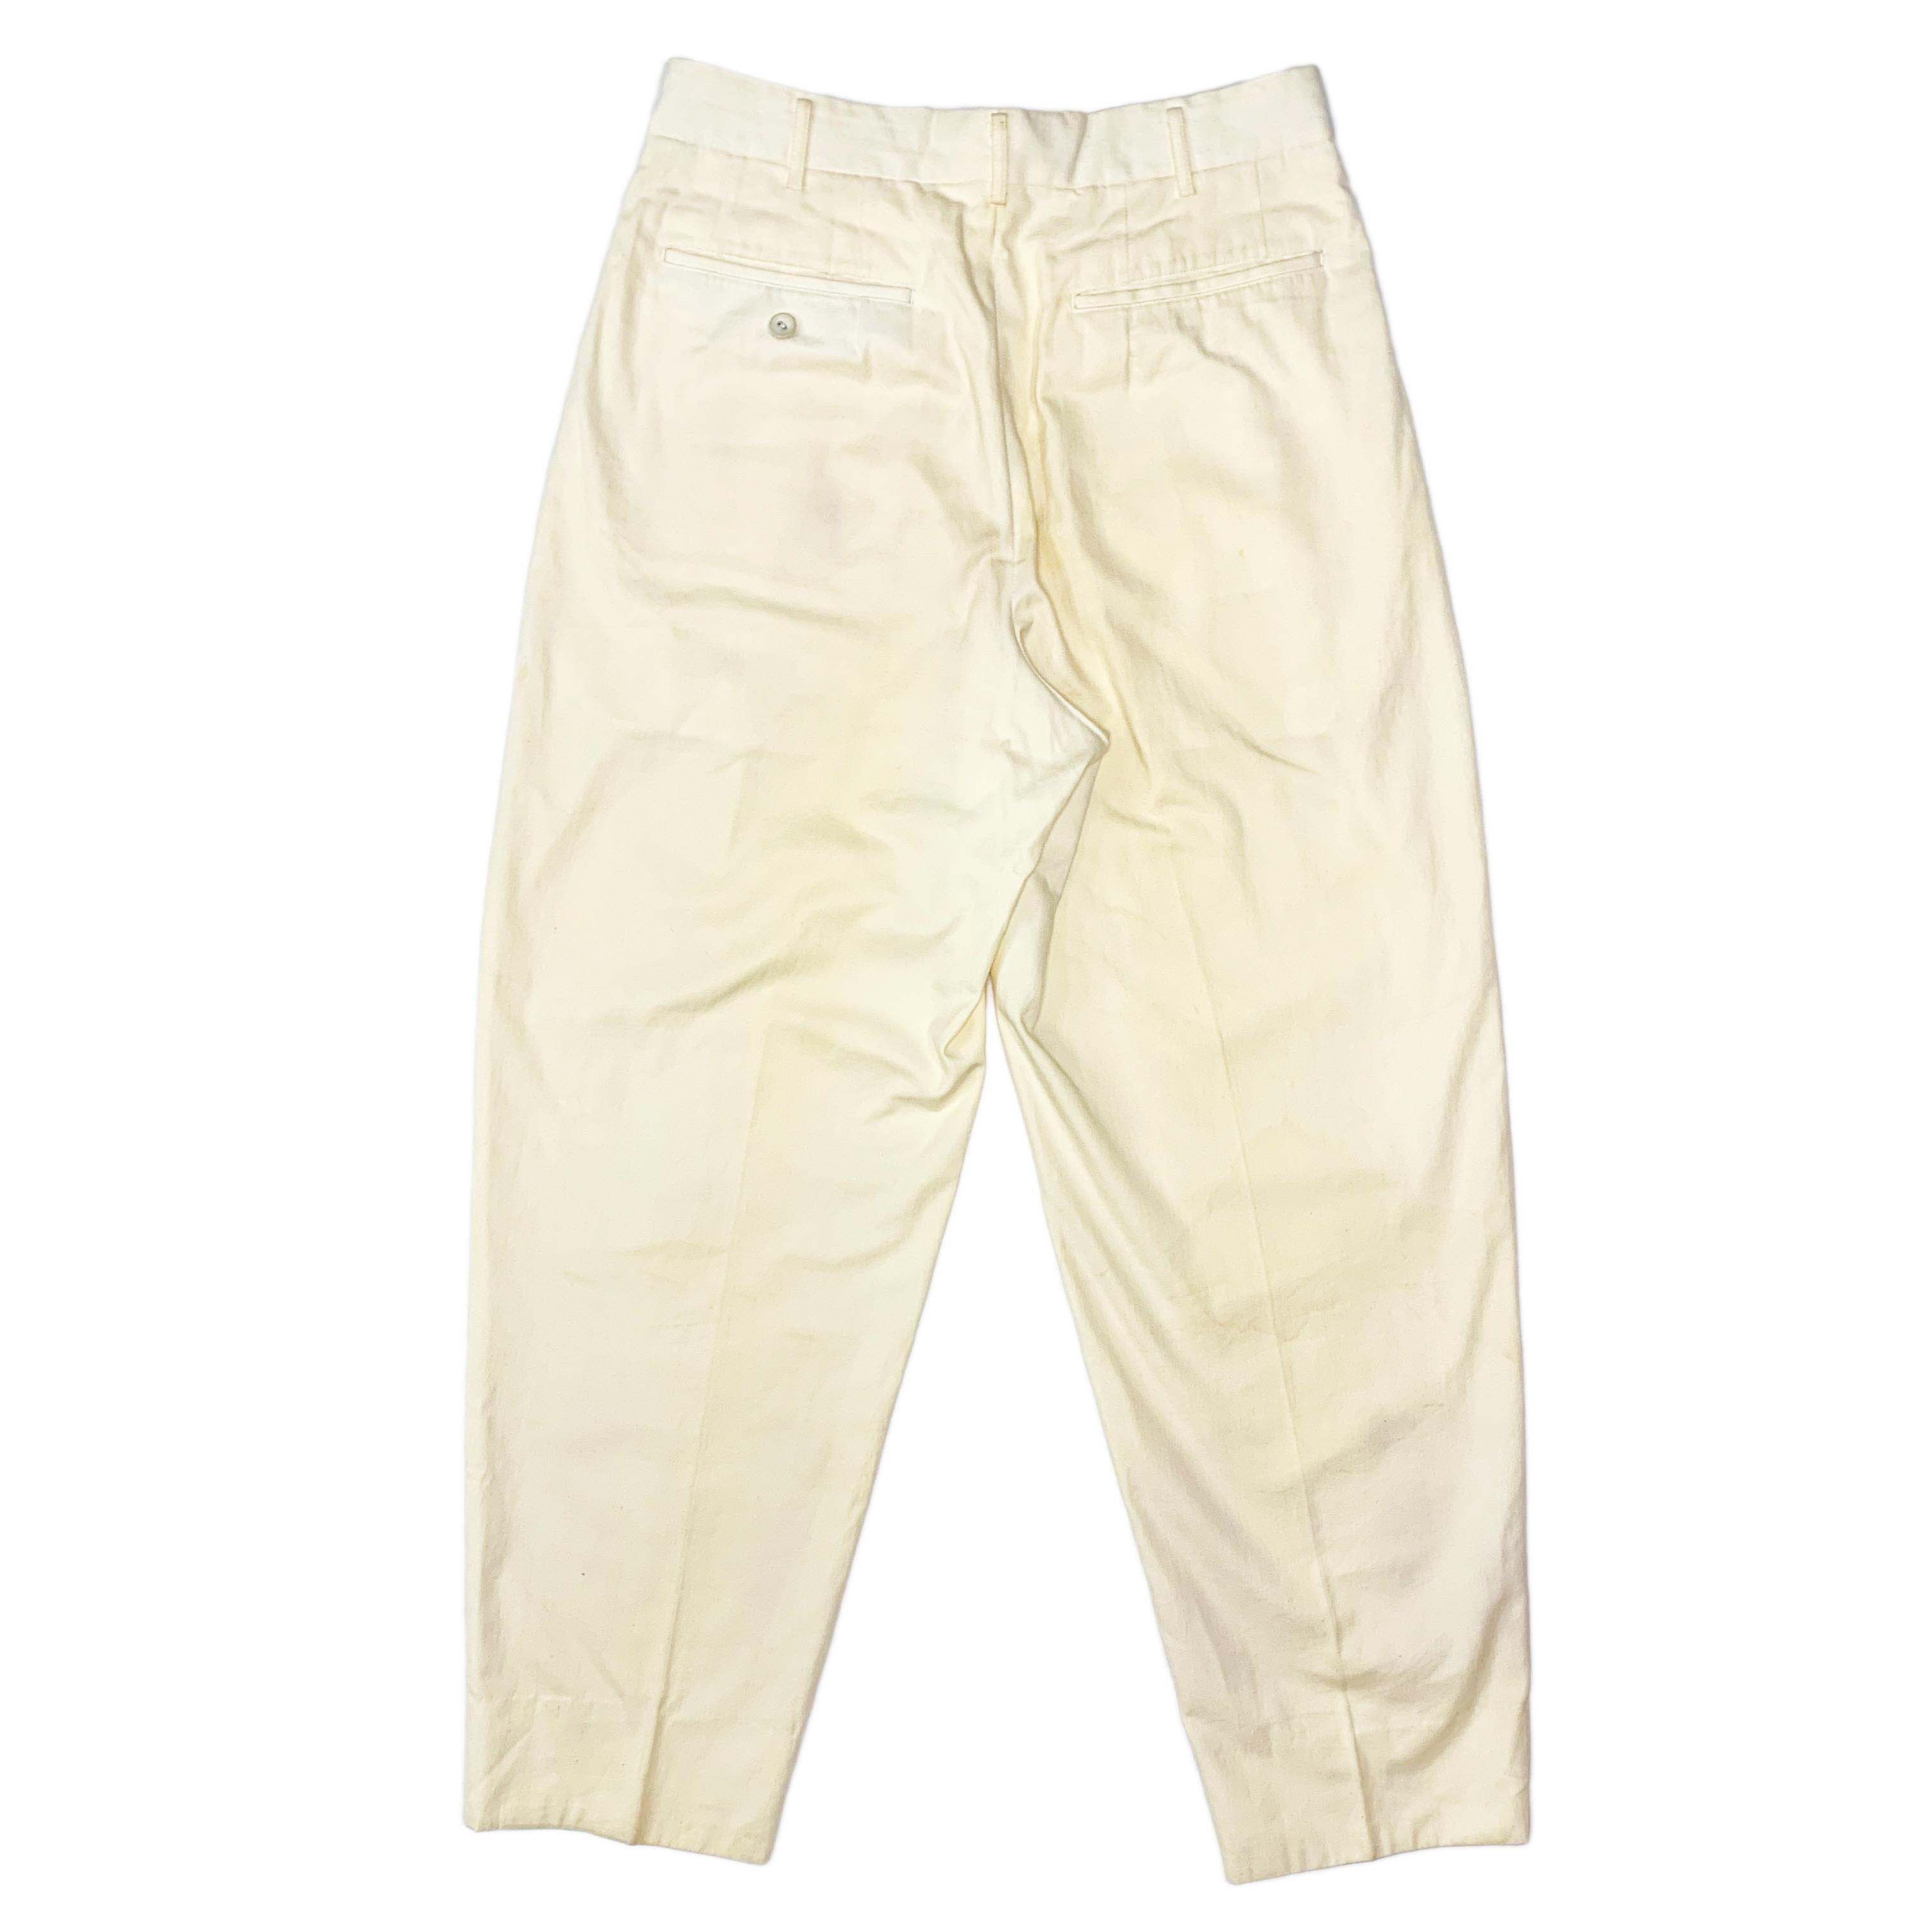 SS87 Short Acetate Jacket & Cotton Pants - 11